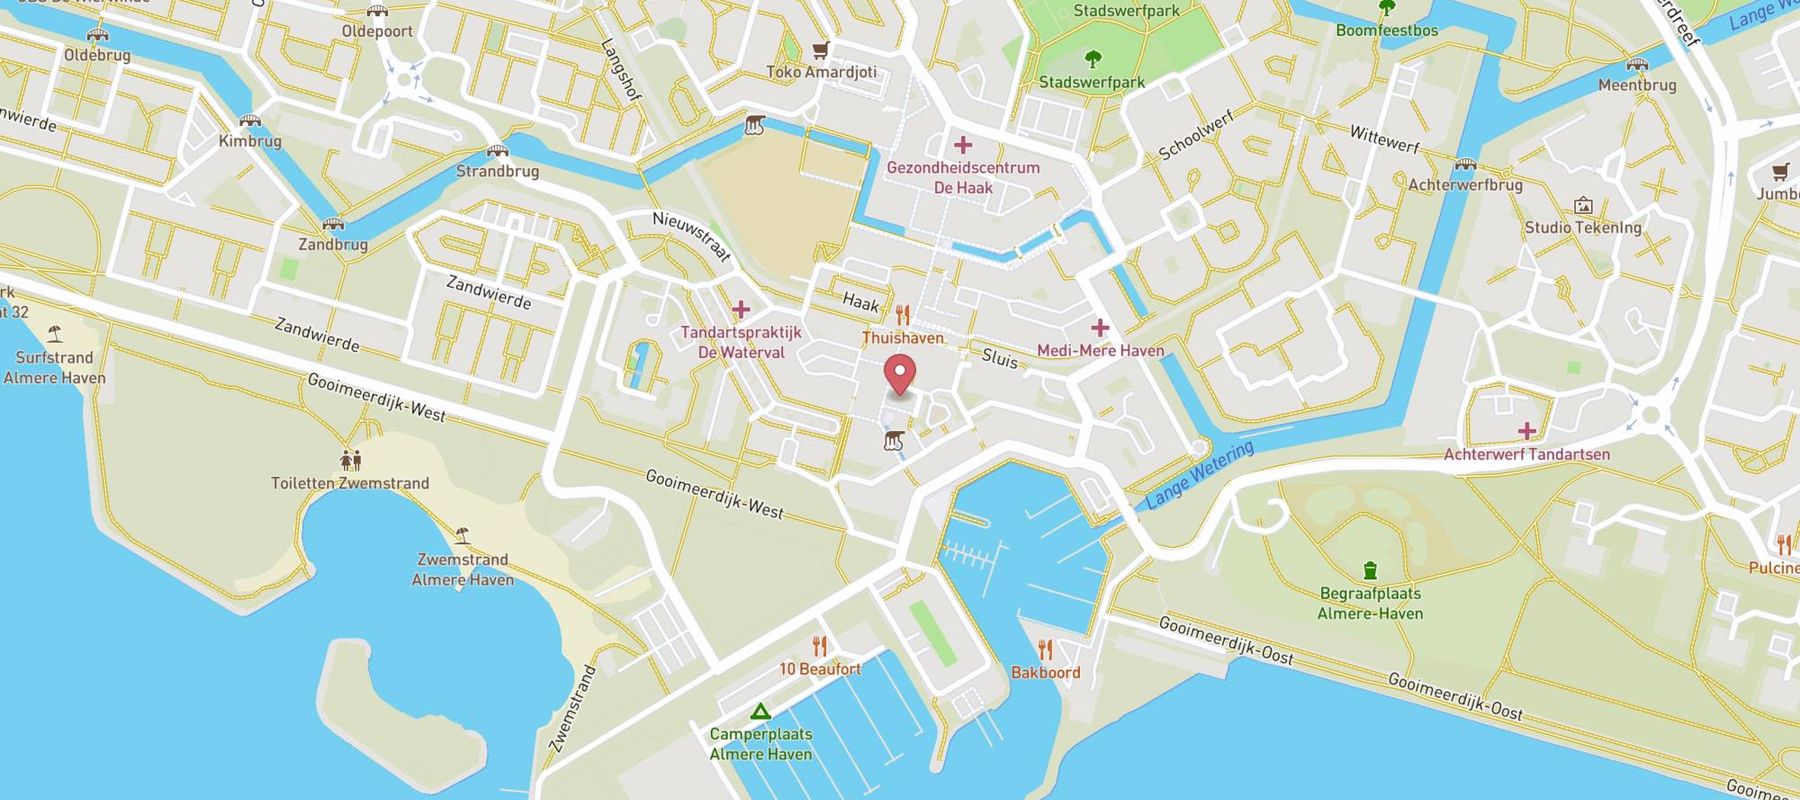 Bakker Bart Almere haven map